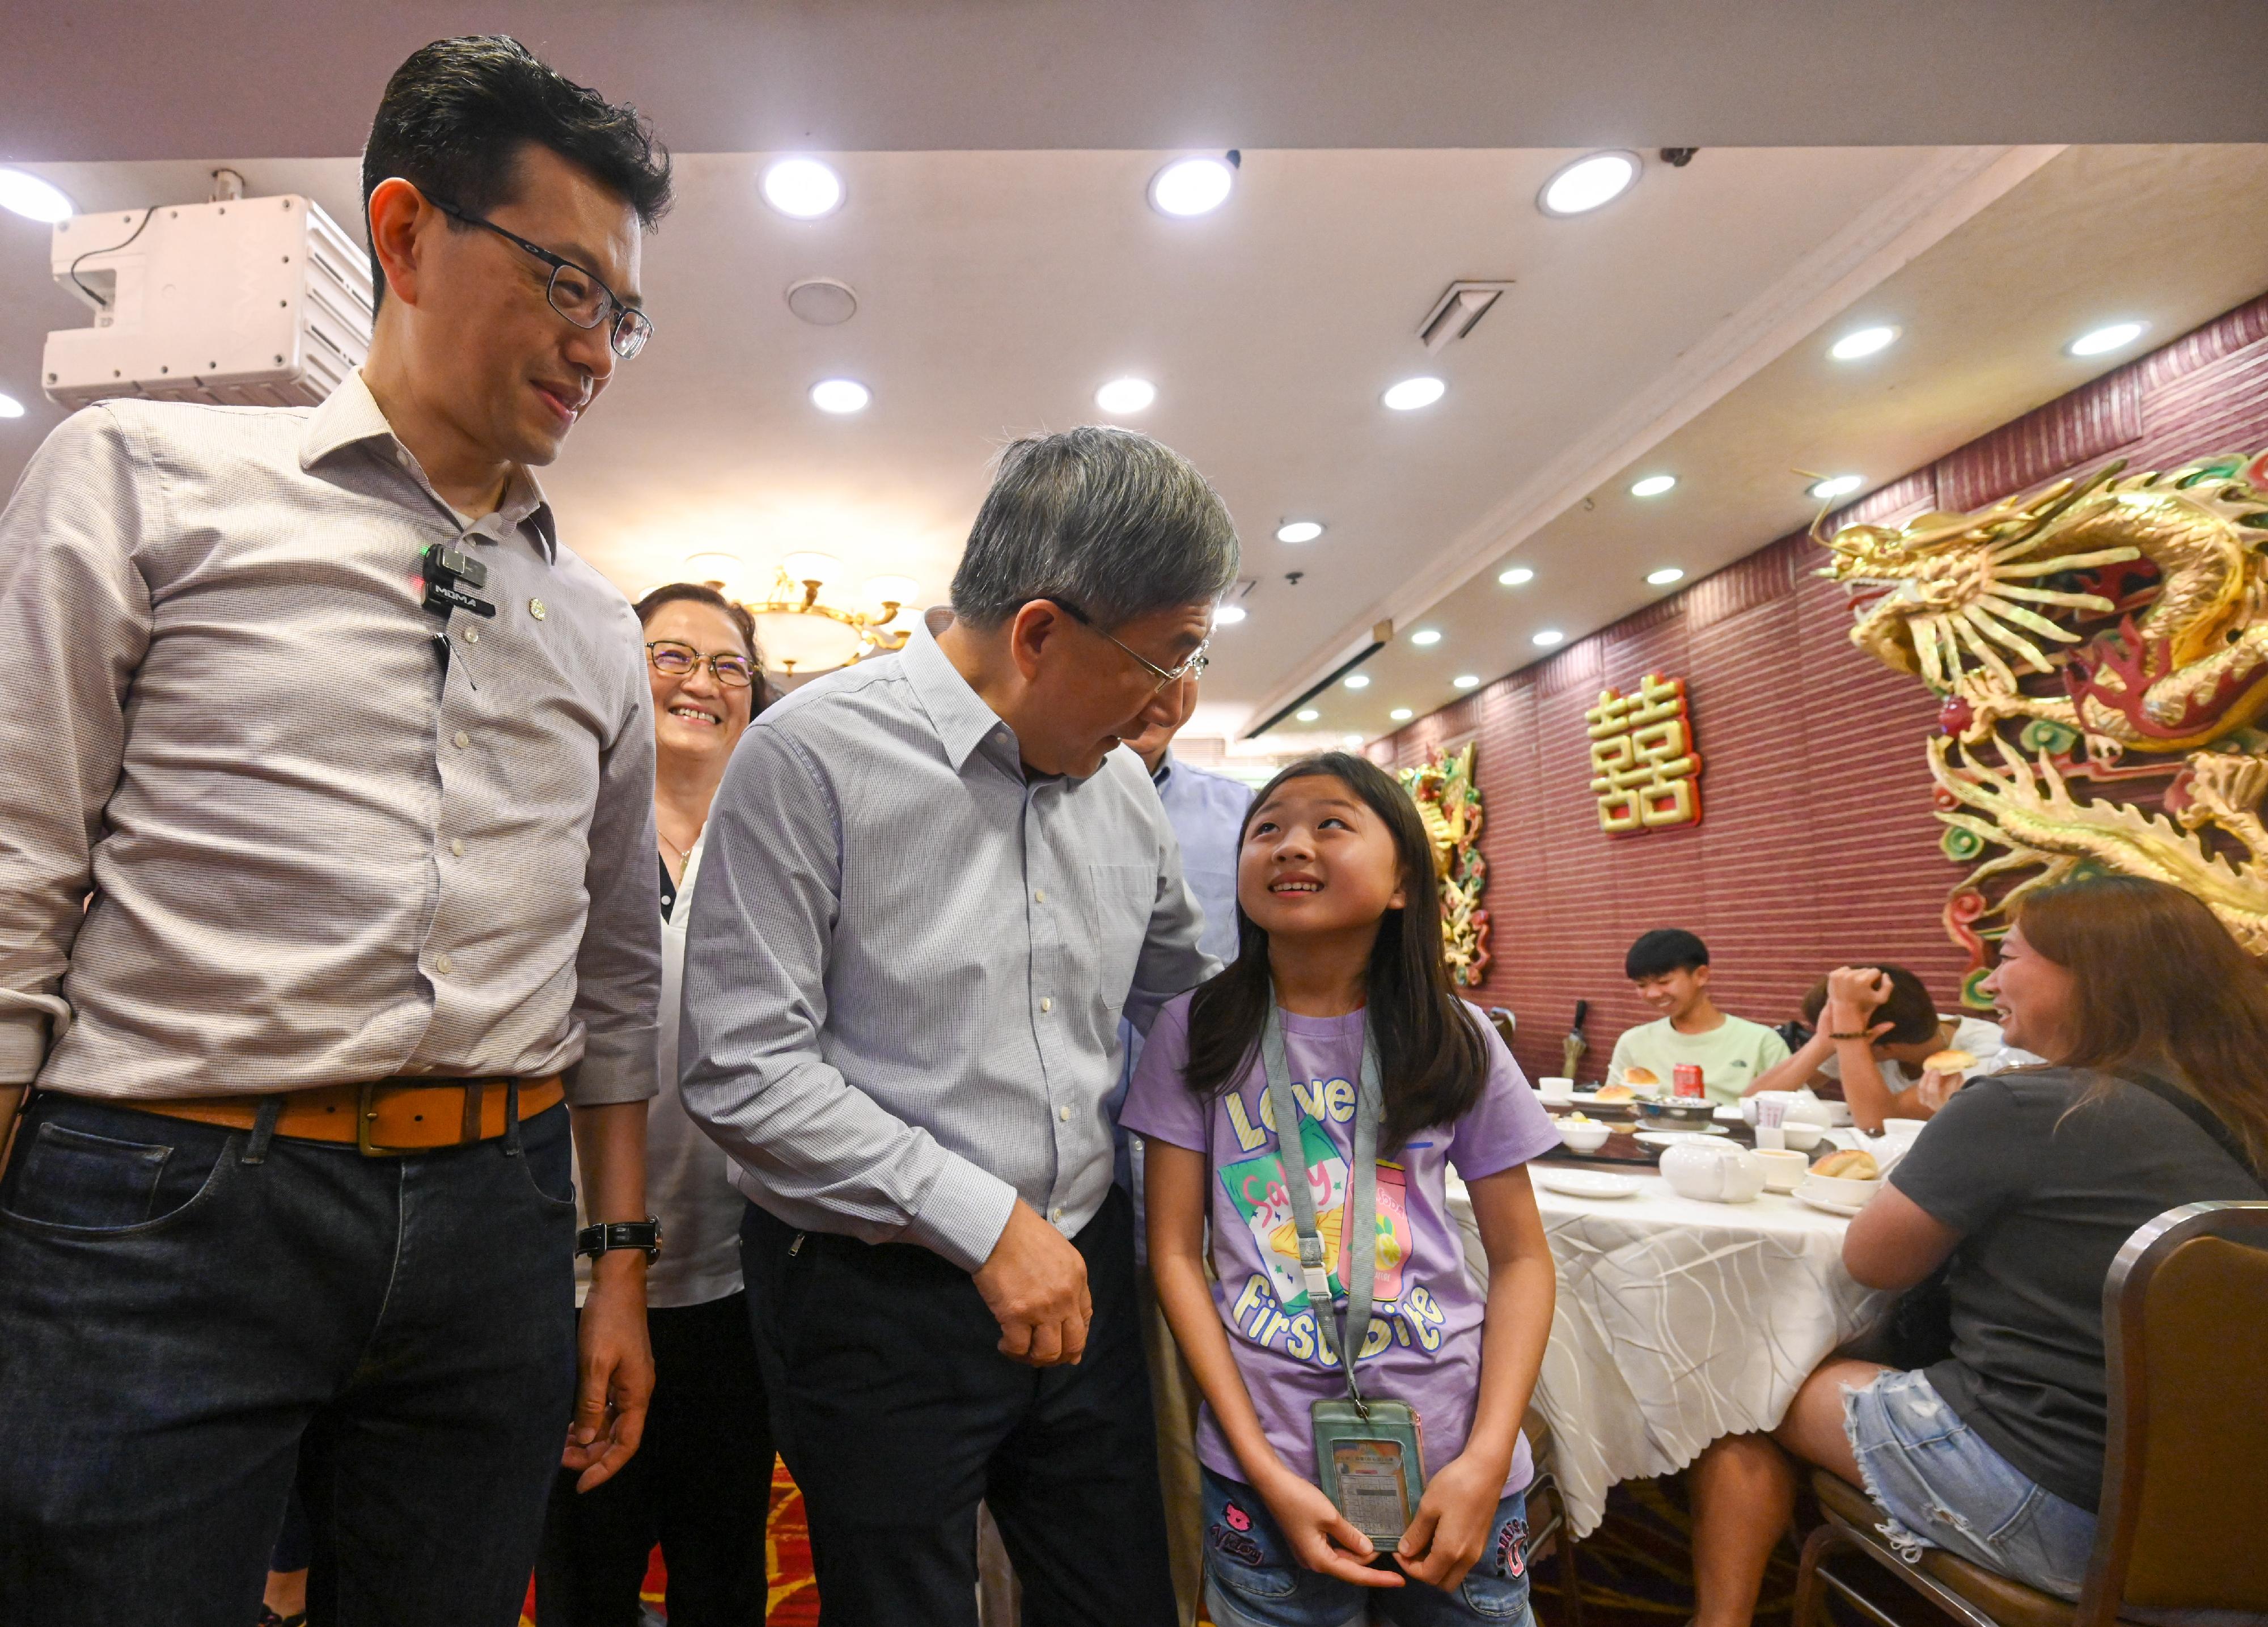 政务司副司长卓永兴今日（五月一日）出席香港工会联合会（工联会）「五·一」劳动周系列活动，到旺角一家酒楼探访慰问饮食业职工。图示卓永兴与小茶客合照。